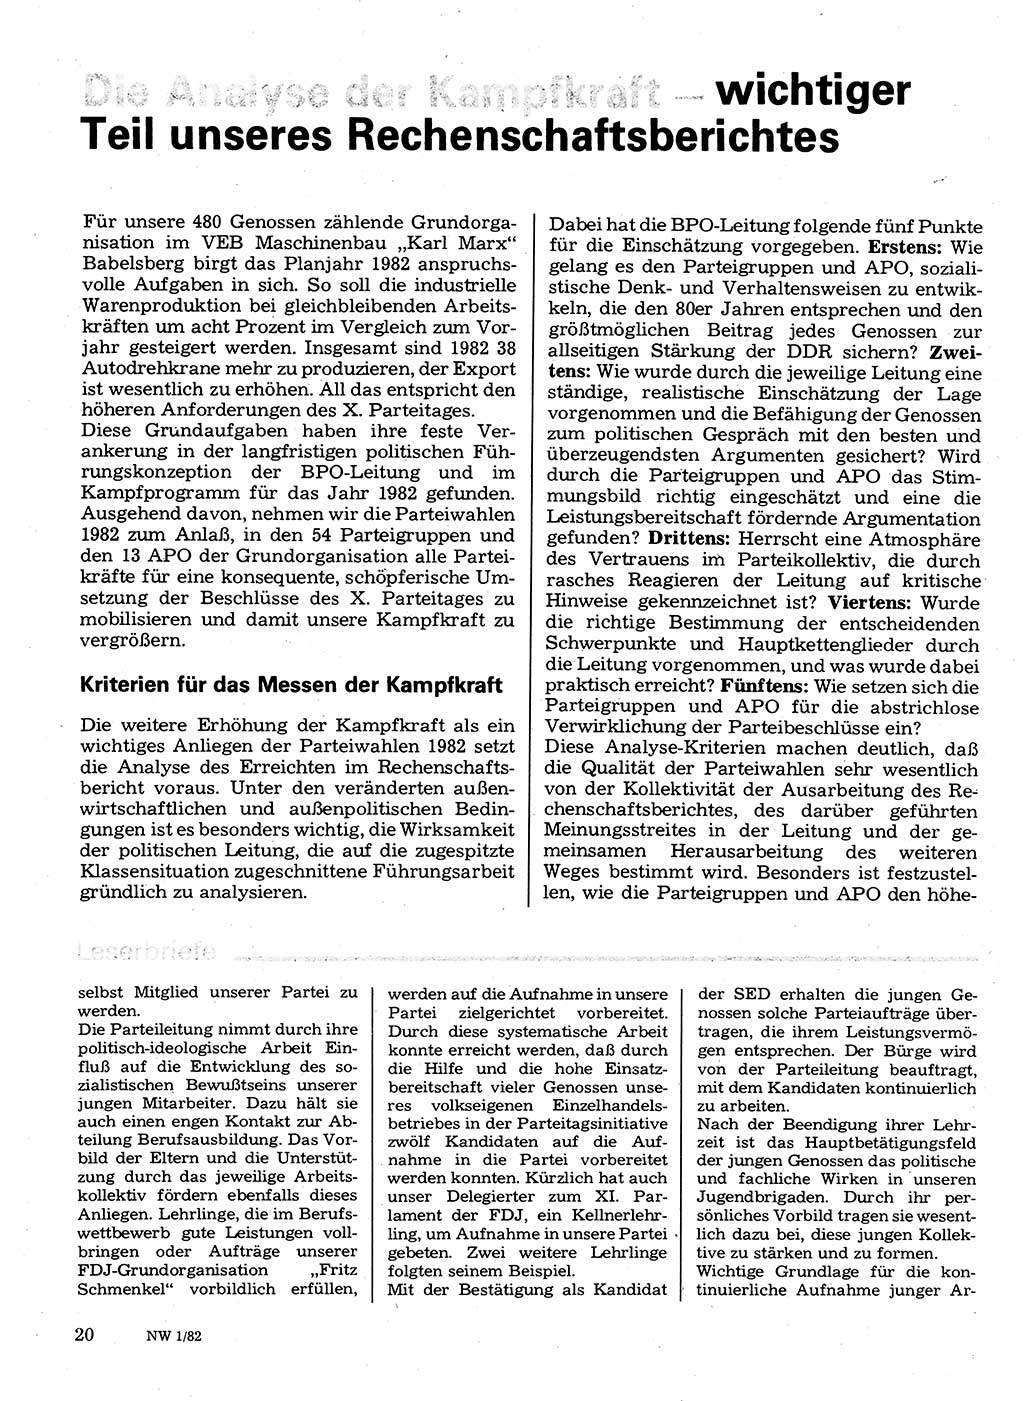 Neuer Weg (NW), Organ des Zentralkomitees (ZK) der SED (Sozialistische Einheitspartei Deutschlands) für Fragen des Parteilebens, 37. Jahrgang [Deutsche Demokratische Republik (DDR)] 1982, Seite 20 (NW ZK SED DDR 1982, S. 20)